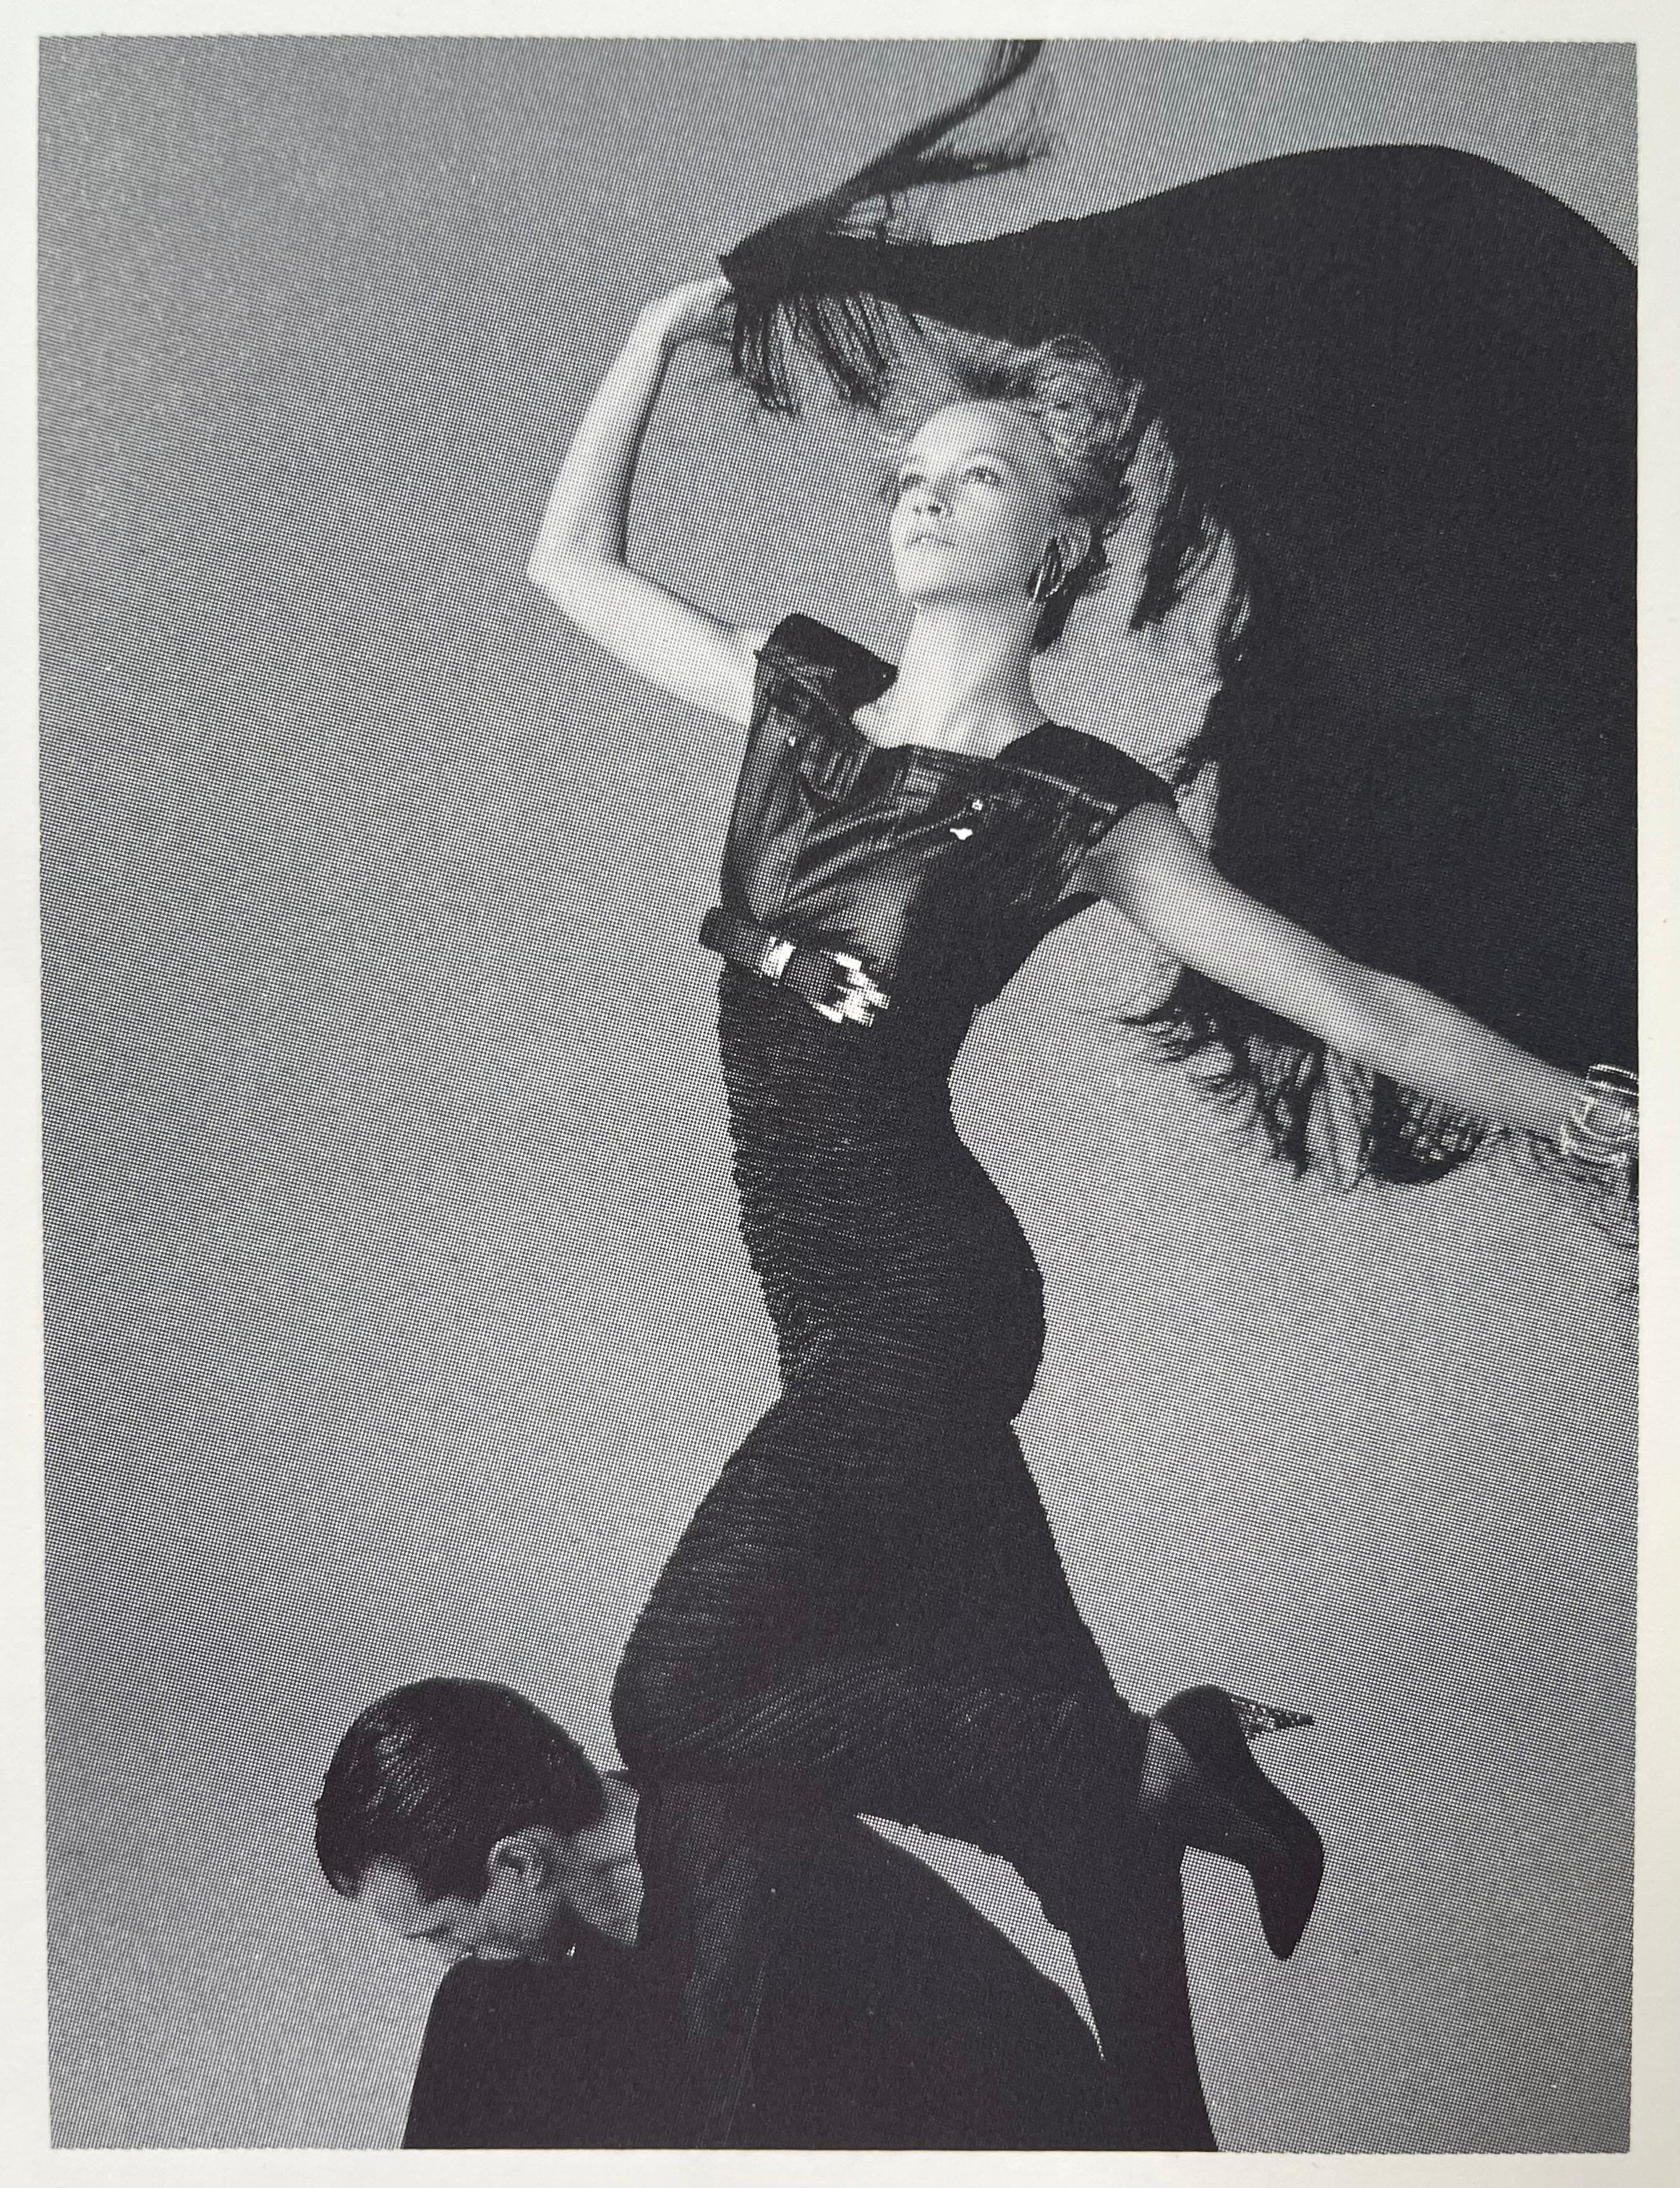 Photographiée par Richard Avedon pour la campagne ADV printemps-été 1987 (voir photo 2), cette robe Gianni Versace des années 80 a conservé son étiquette d'origine ainsi que son prix de vente !
La partie supérieure de la robe est constituée de